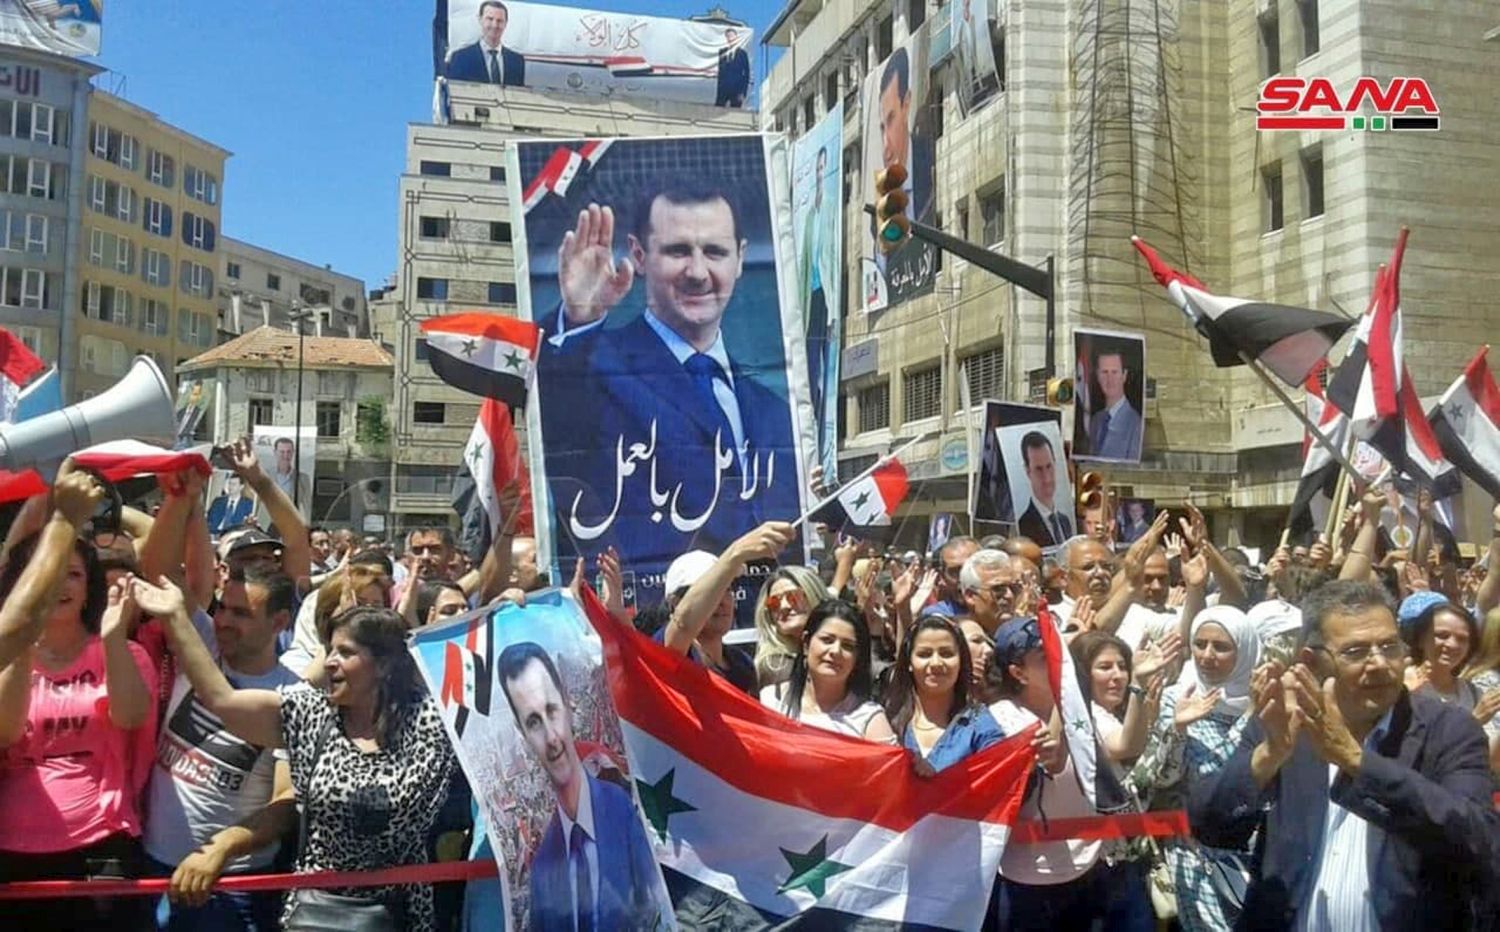 22601 Syrien - Wahlparty in Syrien - Präsidentschaftswahlen, Syrien - Internationales